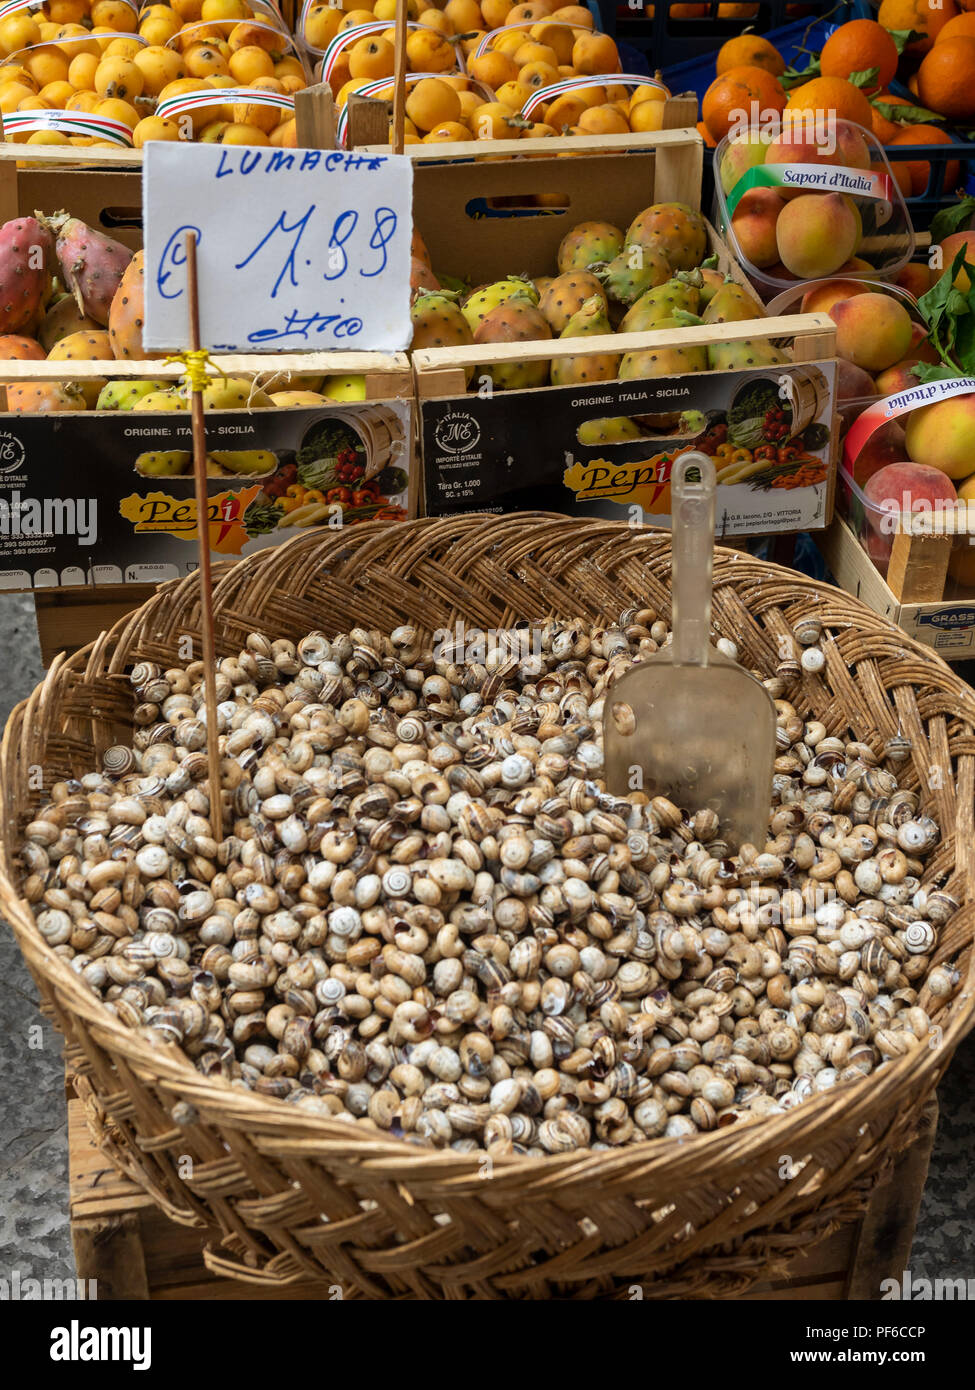 PALERME, SICILE, ITALIE - 21 MAI 2018 : escargots comestibles (Lumache) au marché de la Vucciria avec étiquette de prix Banque D'Images